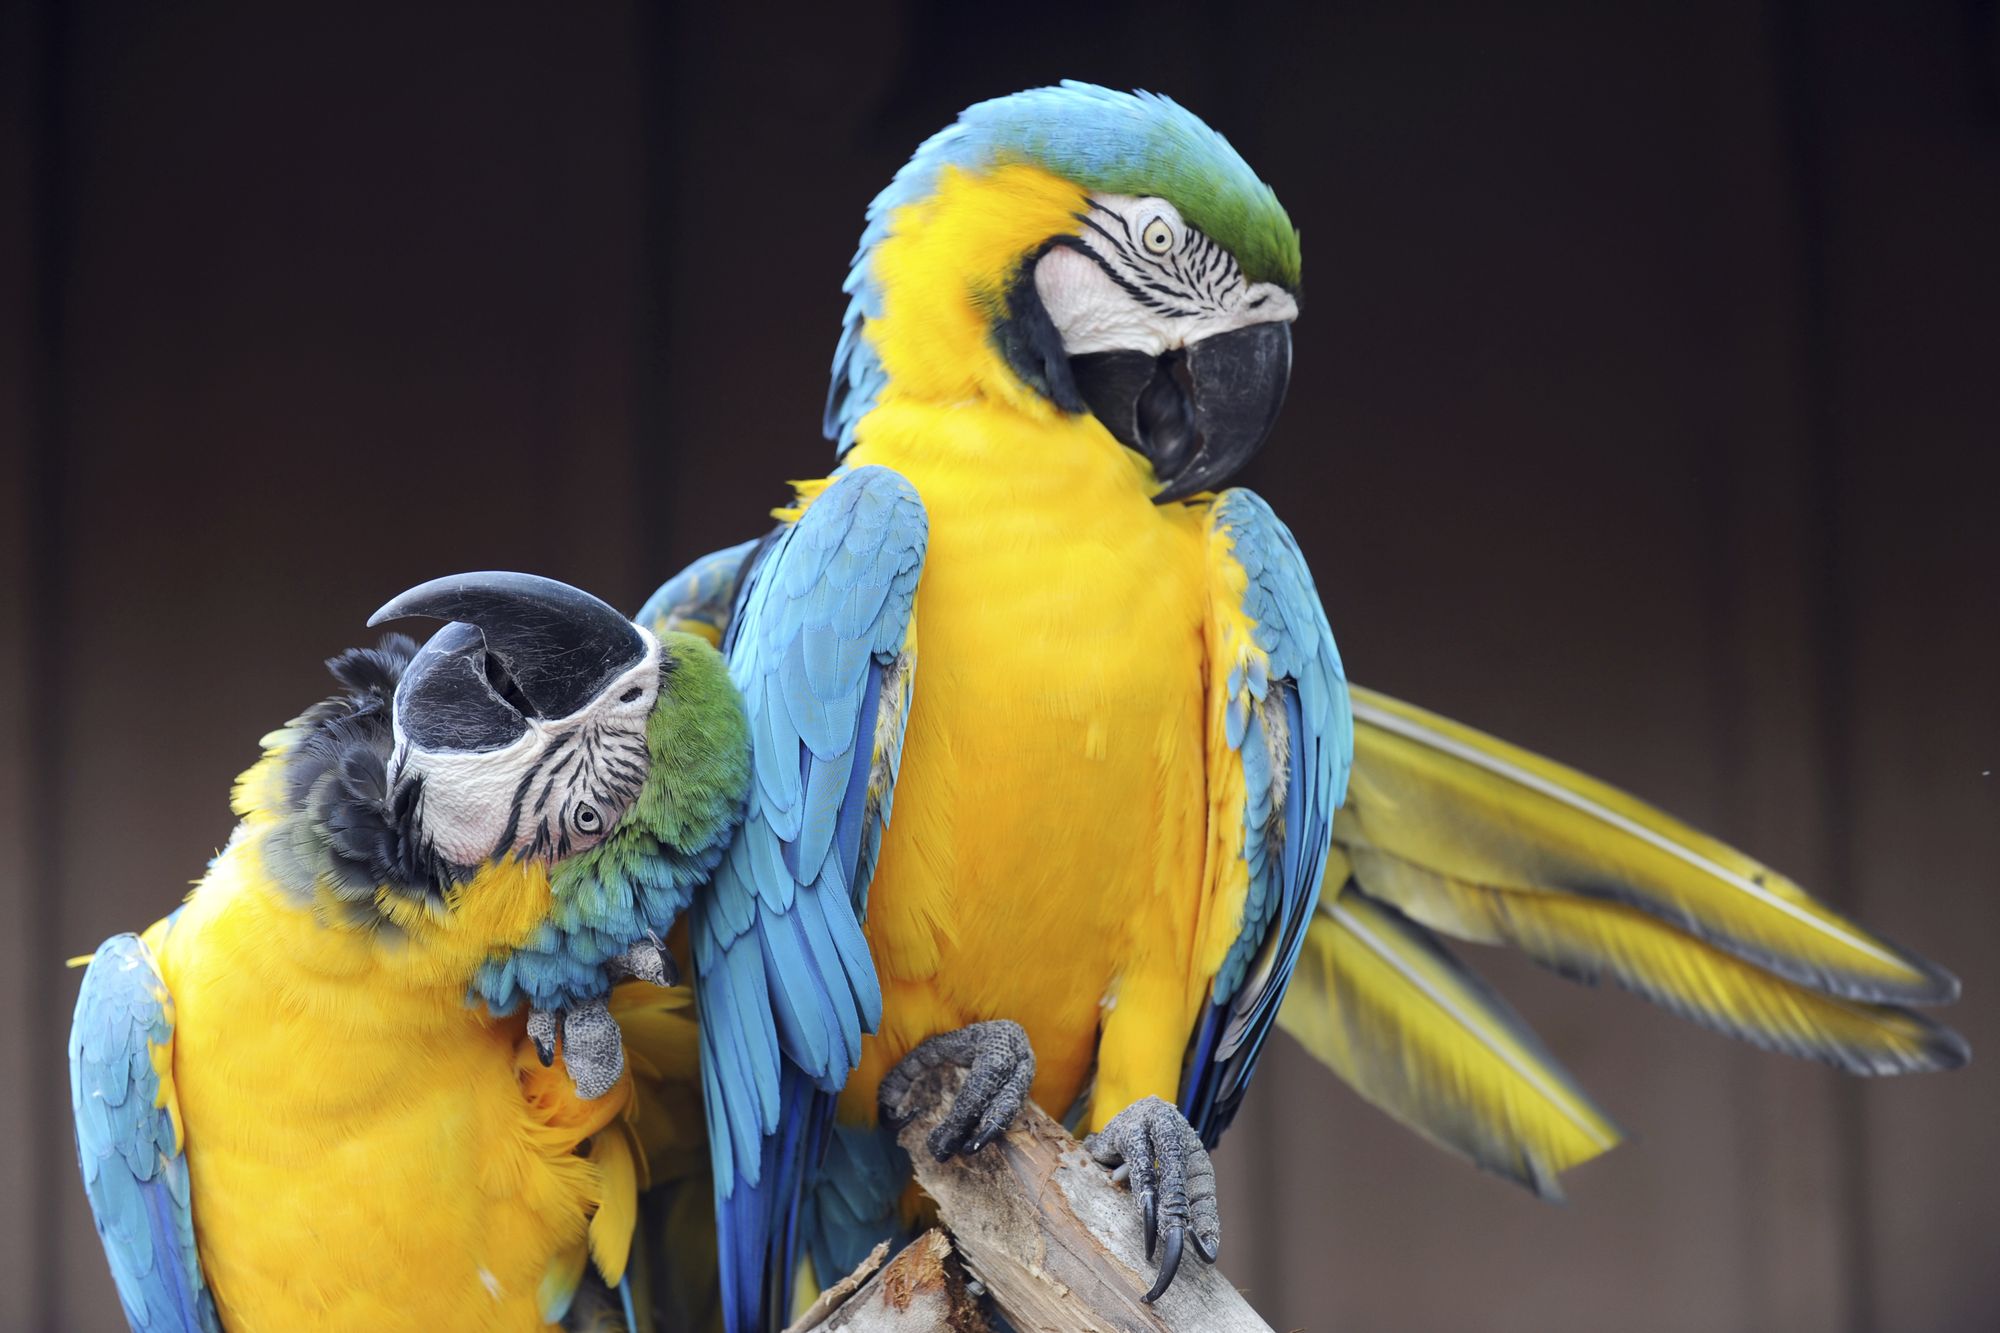 Comment se passe la reprodution chez les oiseaux ? - Blog